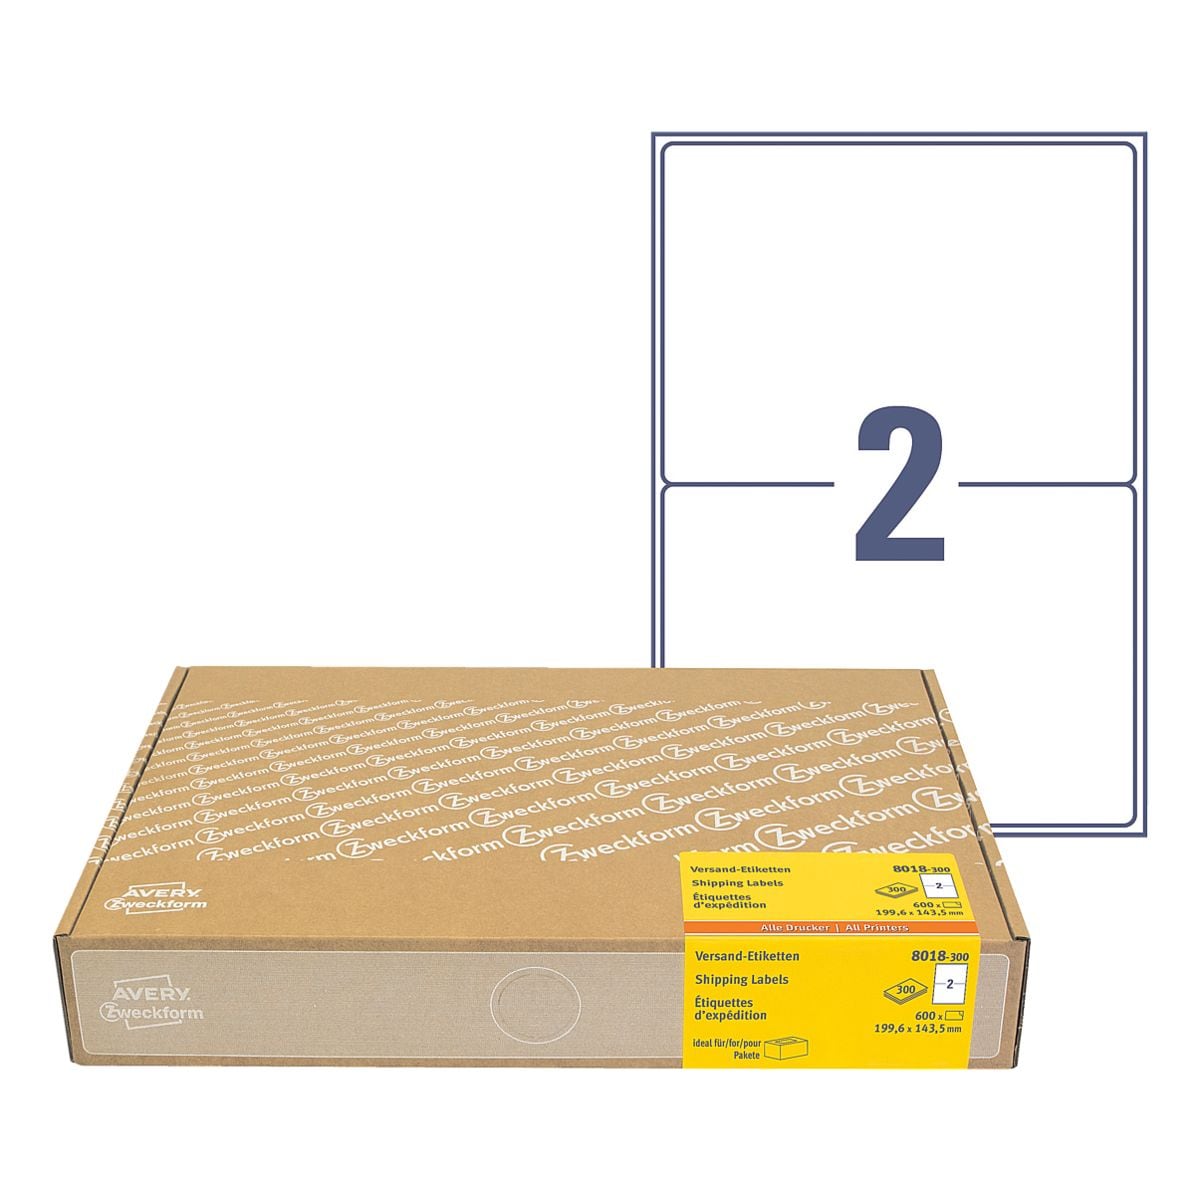 Avery Zweckform 600er-Pack Versand-Etiketten 8018-300 A5 (199,6 x 143,5 mm)